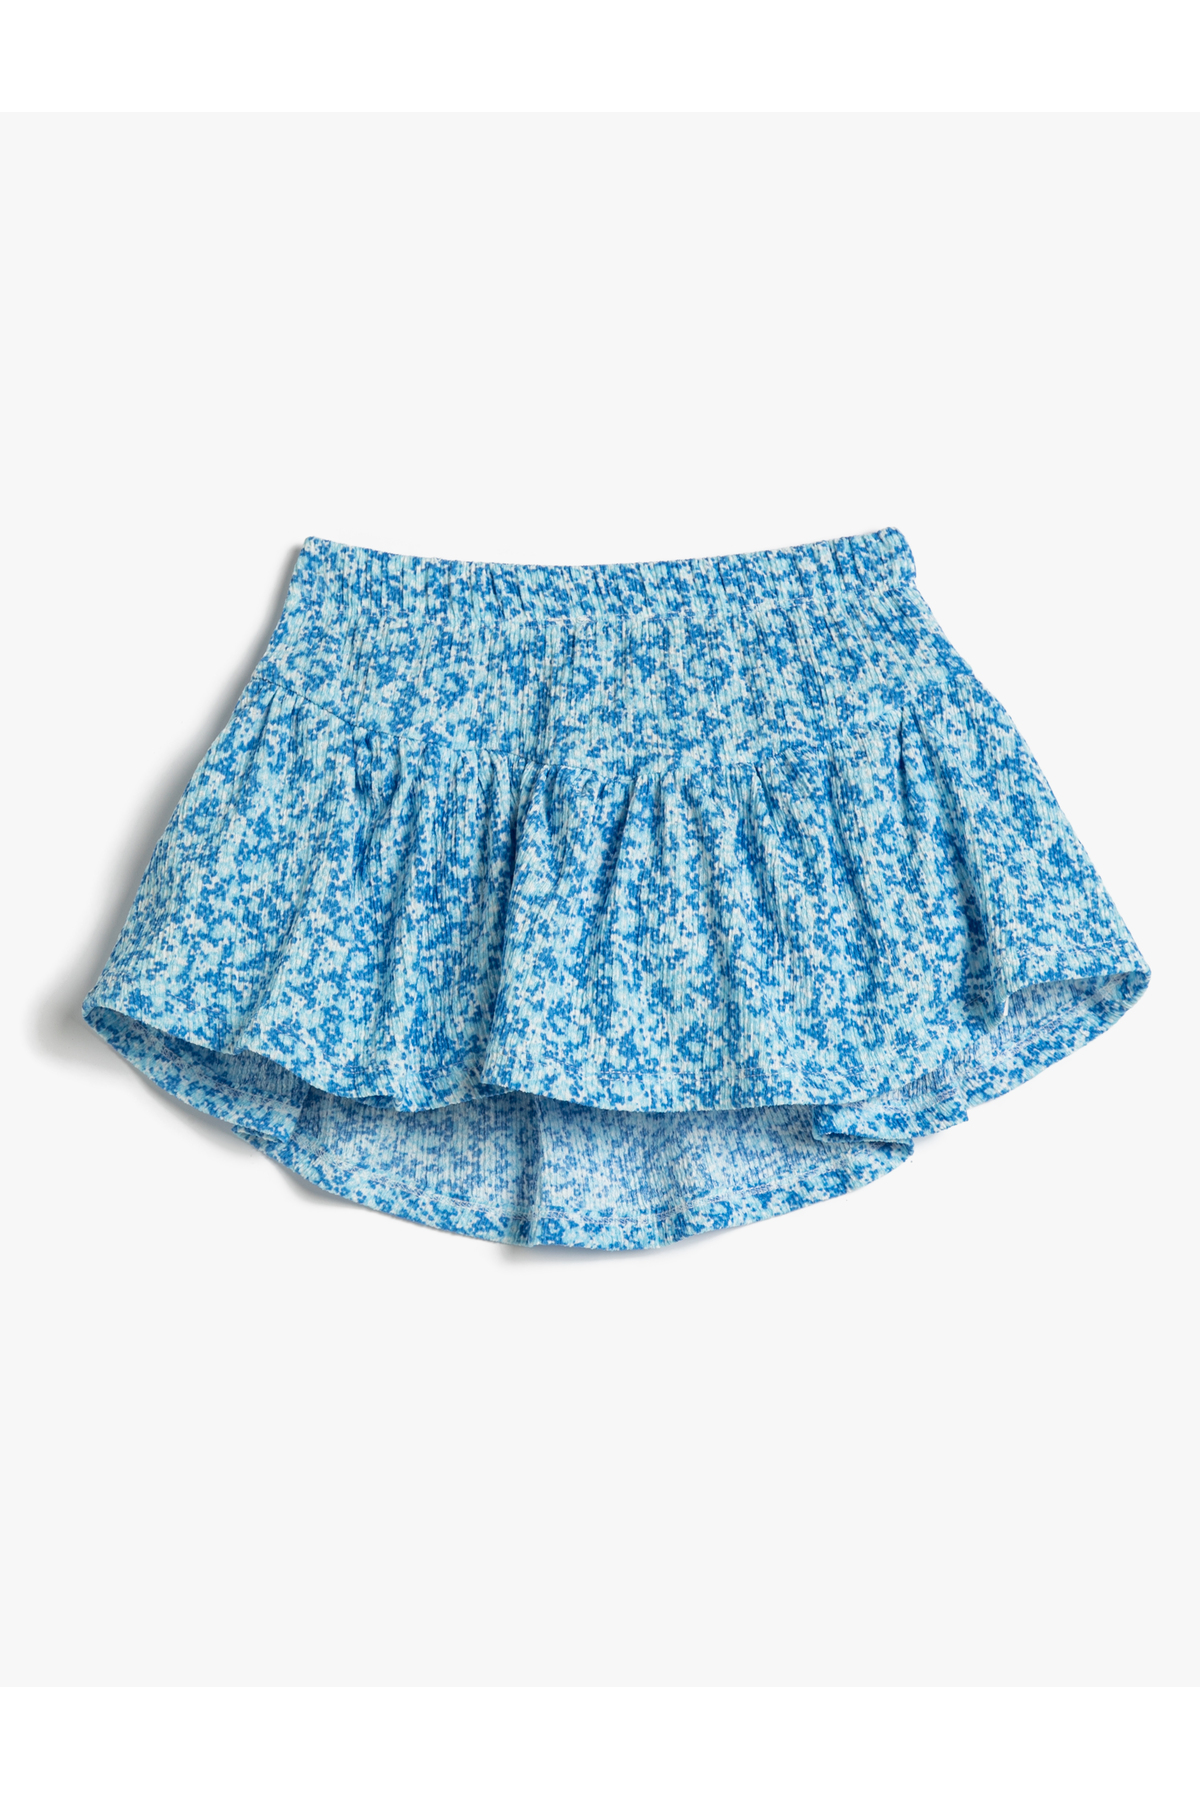 Koton Floral Skirt Elastic Waist Pleated Textured